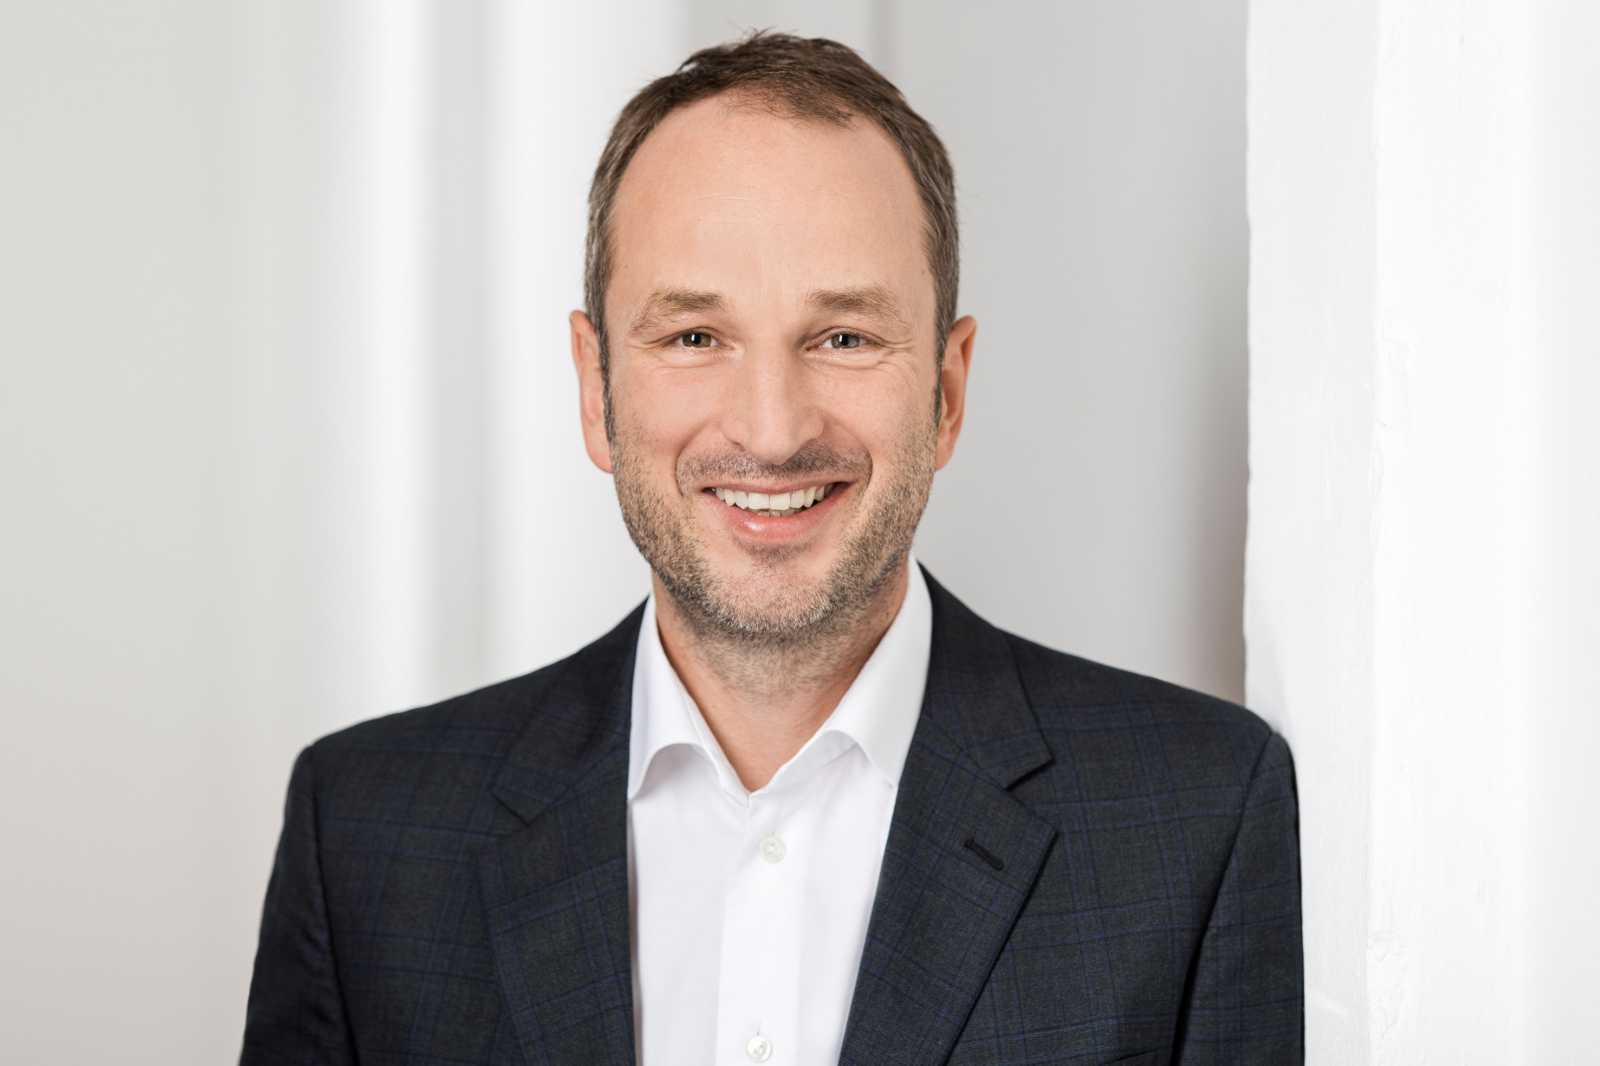 Karsten Wulf ist Geschäftsführender Gesellschafter der zwei.7 Holding GmbH sowie einer der beiden Gründer und ehemaligen Inhaber eines Dienstleisters, der zu den größten für Kundenbetreuung in Deutschland zählt. (Foto: zwei.7)